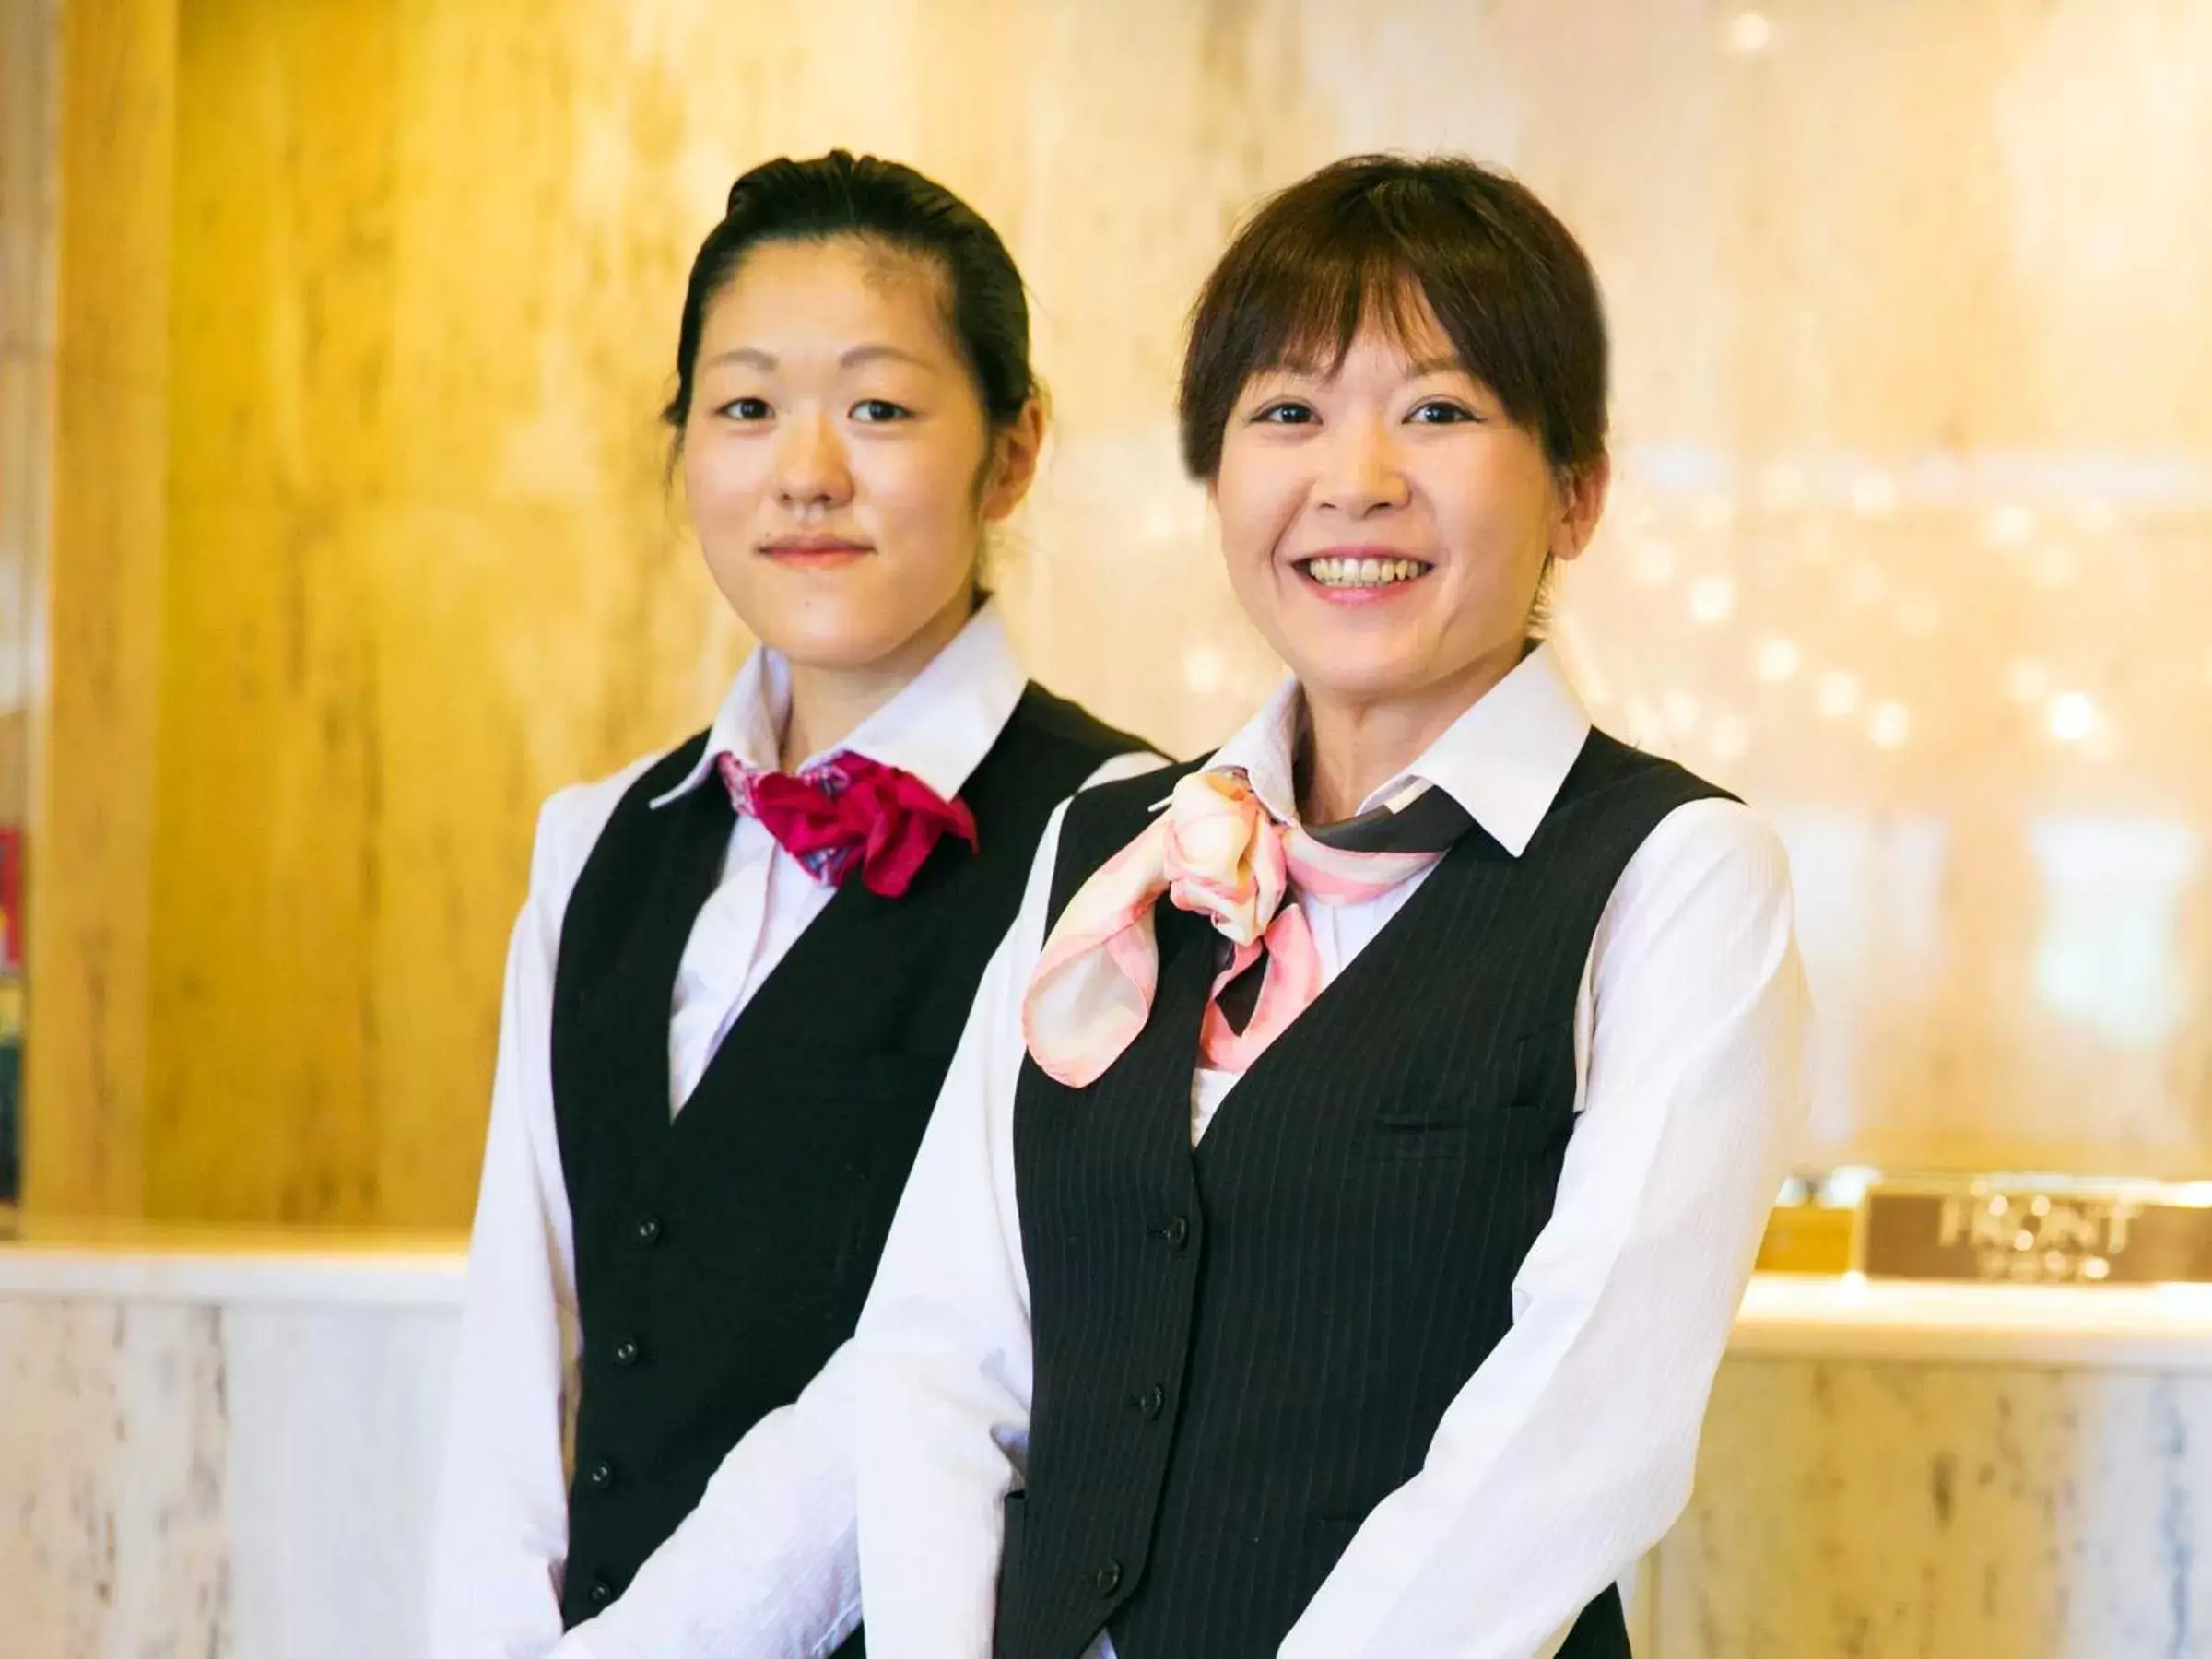 Staff in Numazu Grand Hotel